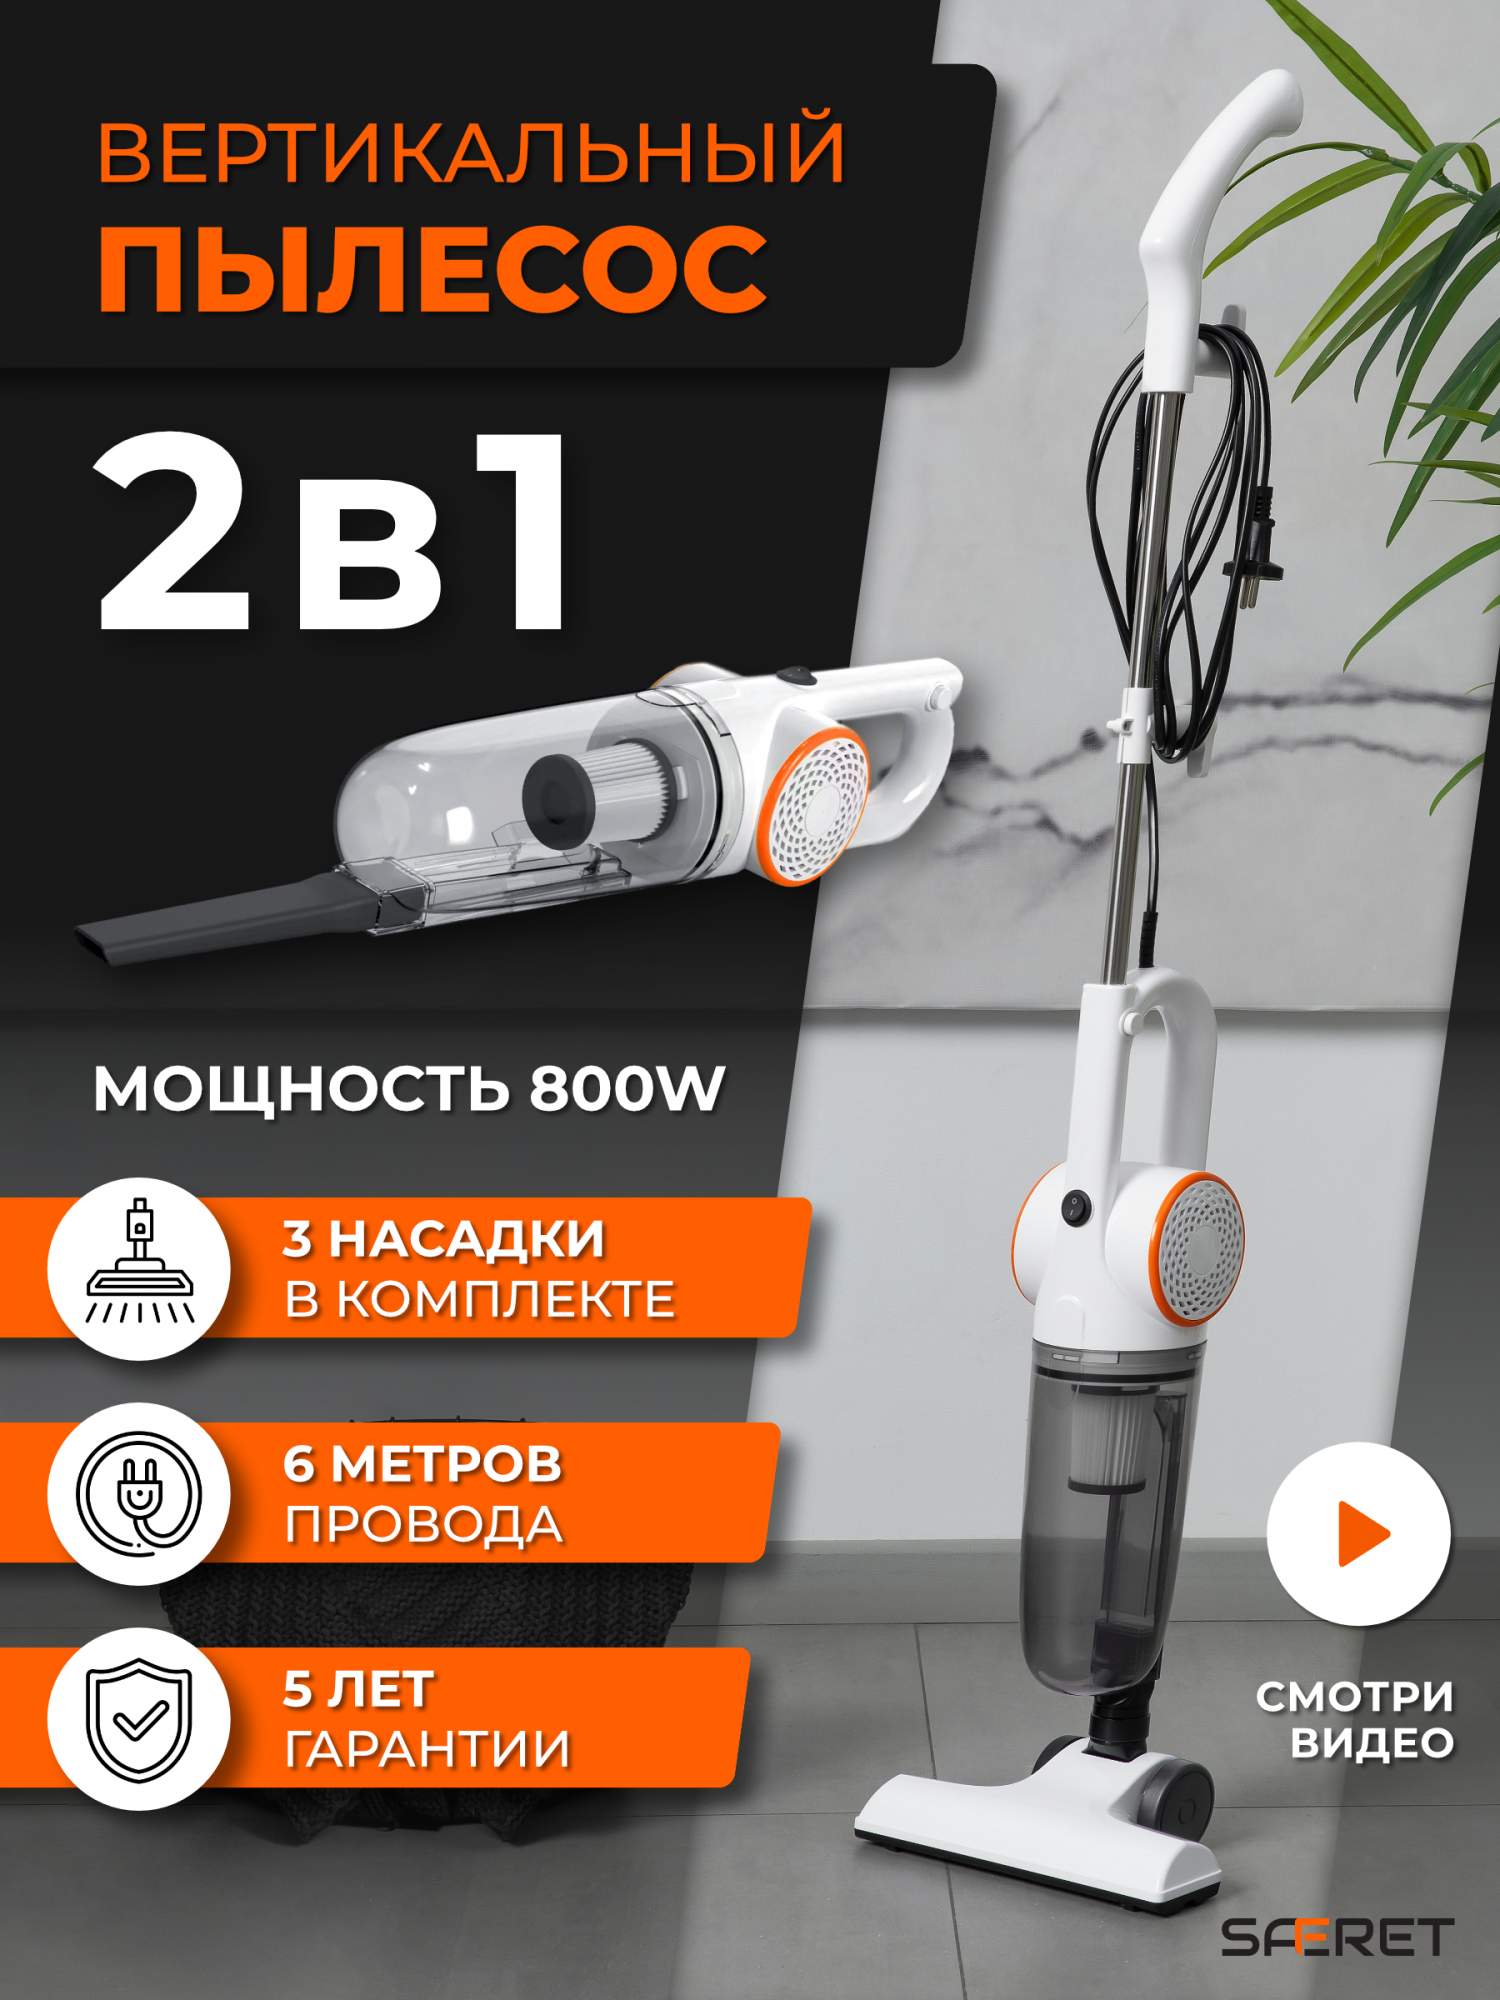 Пылесос SAFERET vrplpr1 белый, оранжевый, купить в Москве, цены в интернет-магазинах на Мегамаркет